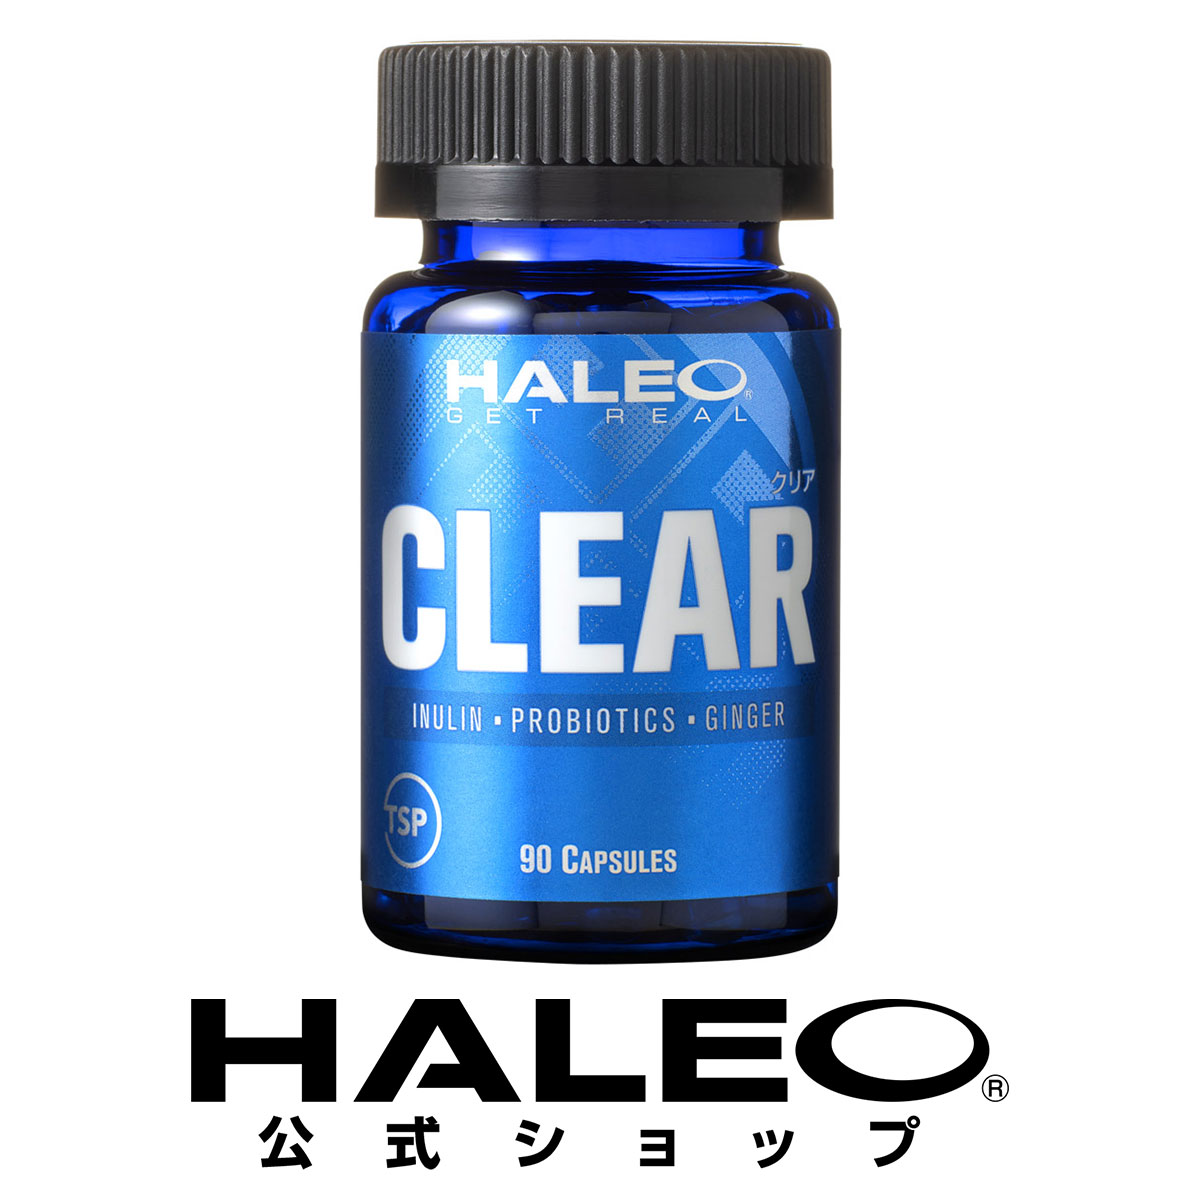 植物由来の酵素サプリメント 高額売筋 HALEO ハレオ クリア CLEAR 90カプセル 激安特価品 消化酵素 イヌリン 乳酸菌